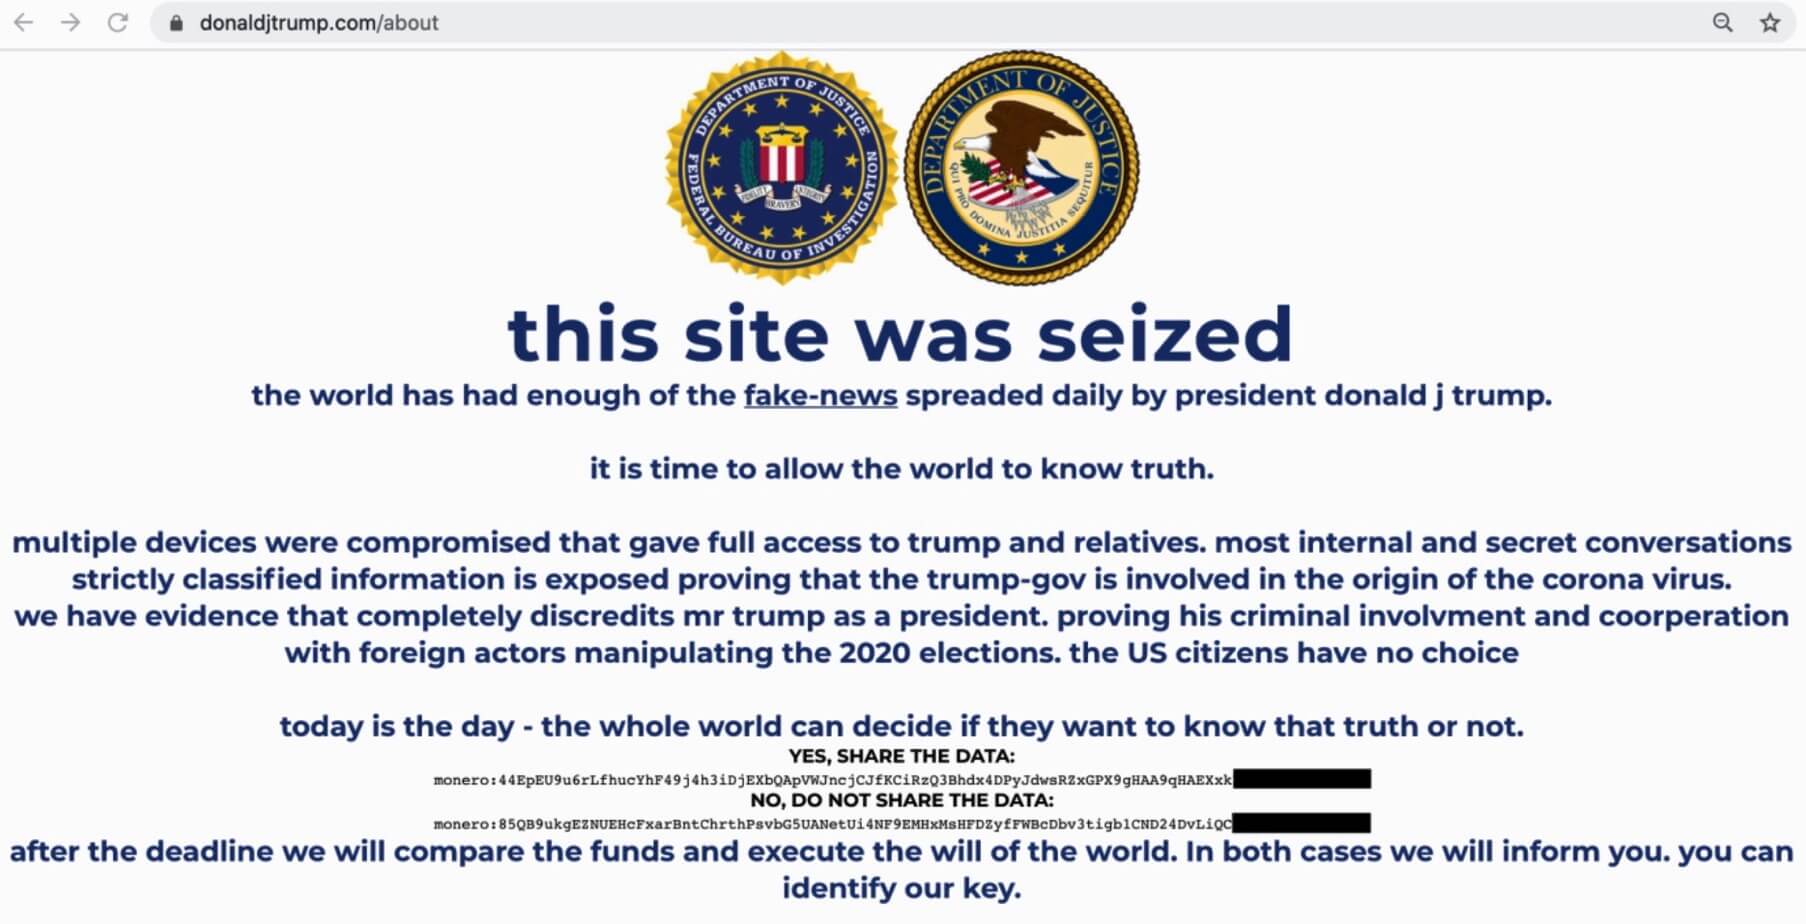 Trump campaign website hacked